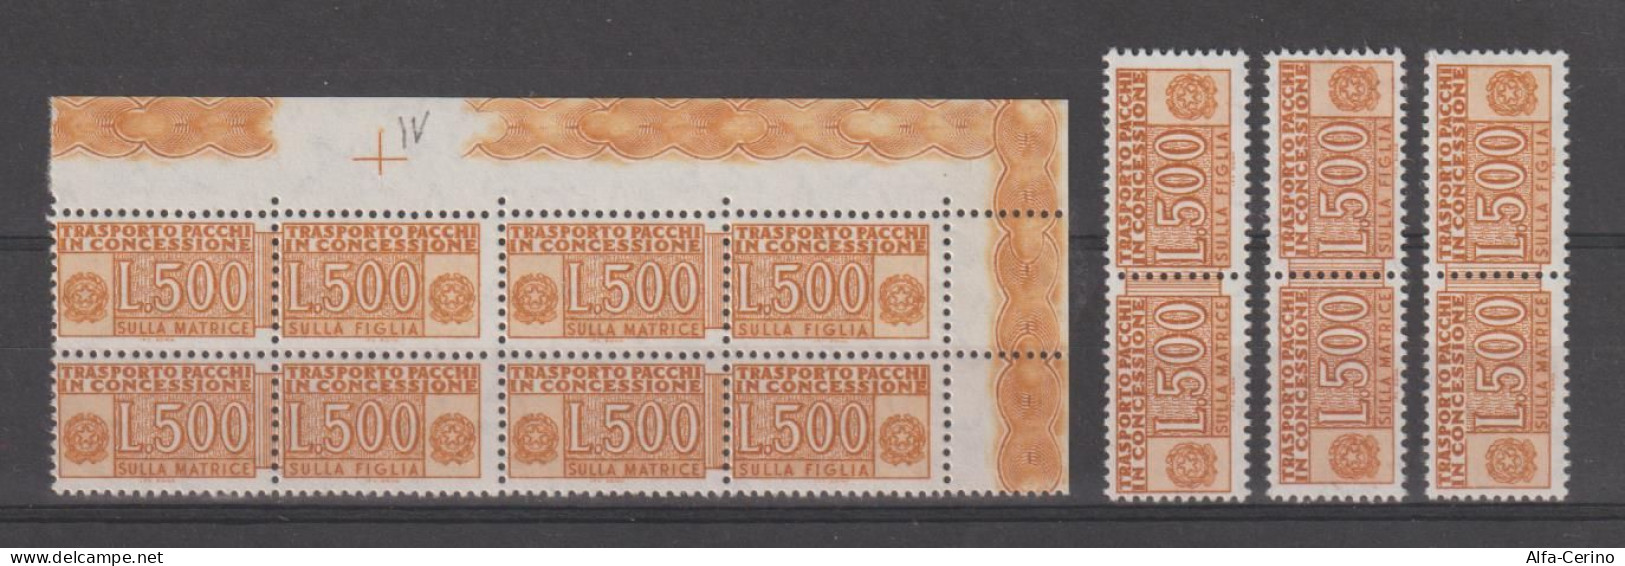 REPUBBLICA:  1955/81  PACCHI  IN  CONCESSIONE  -  £. 500  OCRA  N. -  RIPETUTO  7  VOLTE  -  SASS. 19 - Colis-concession